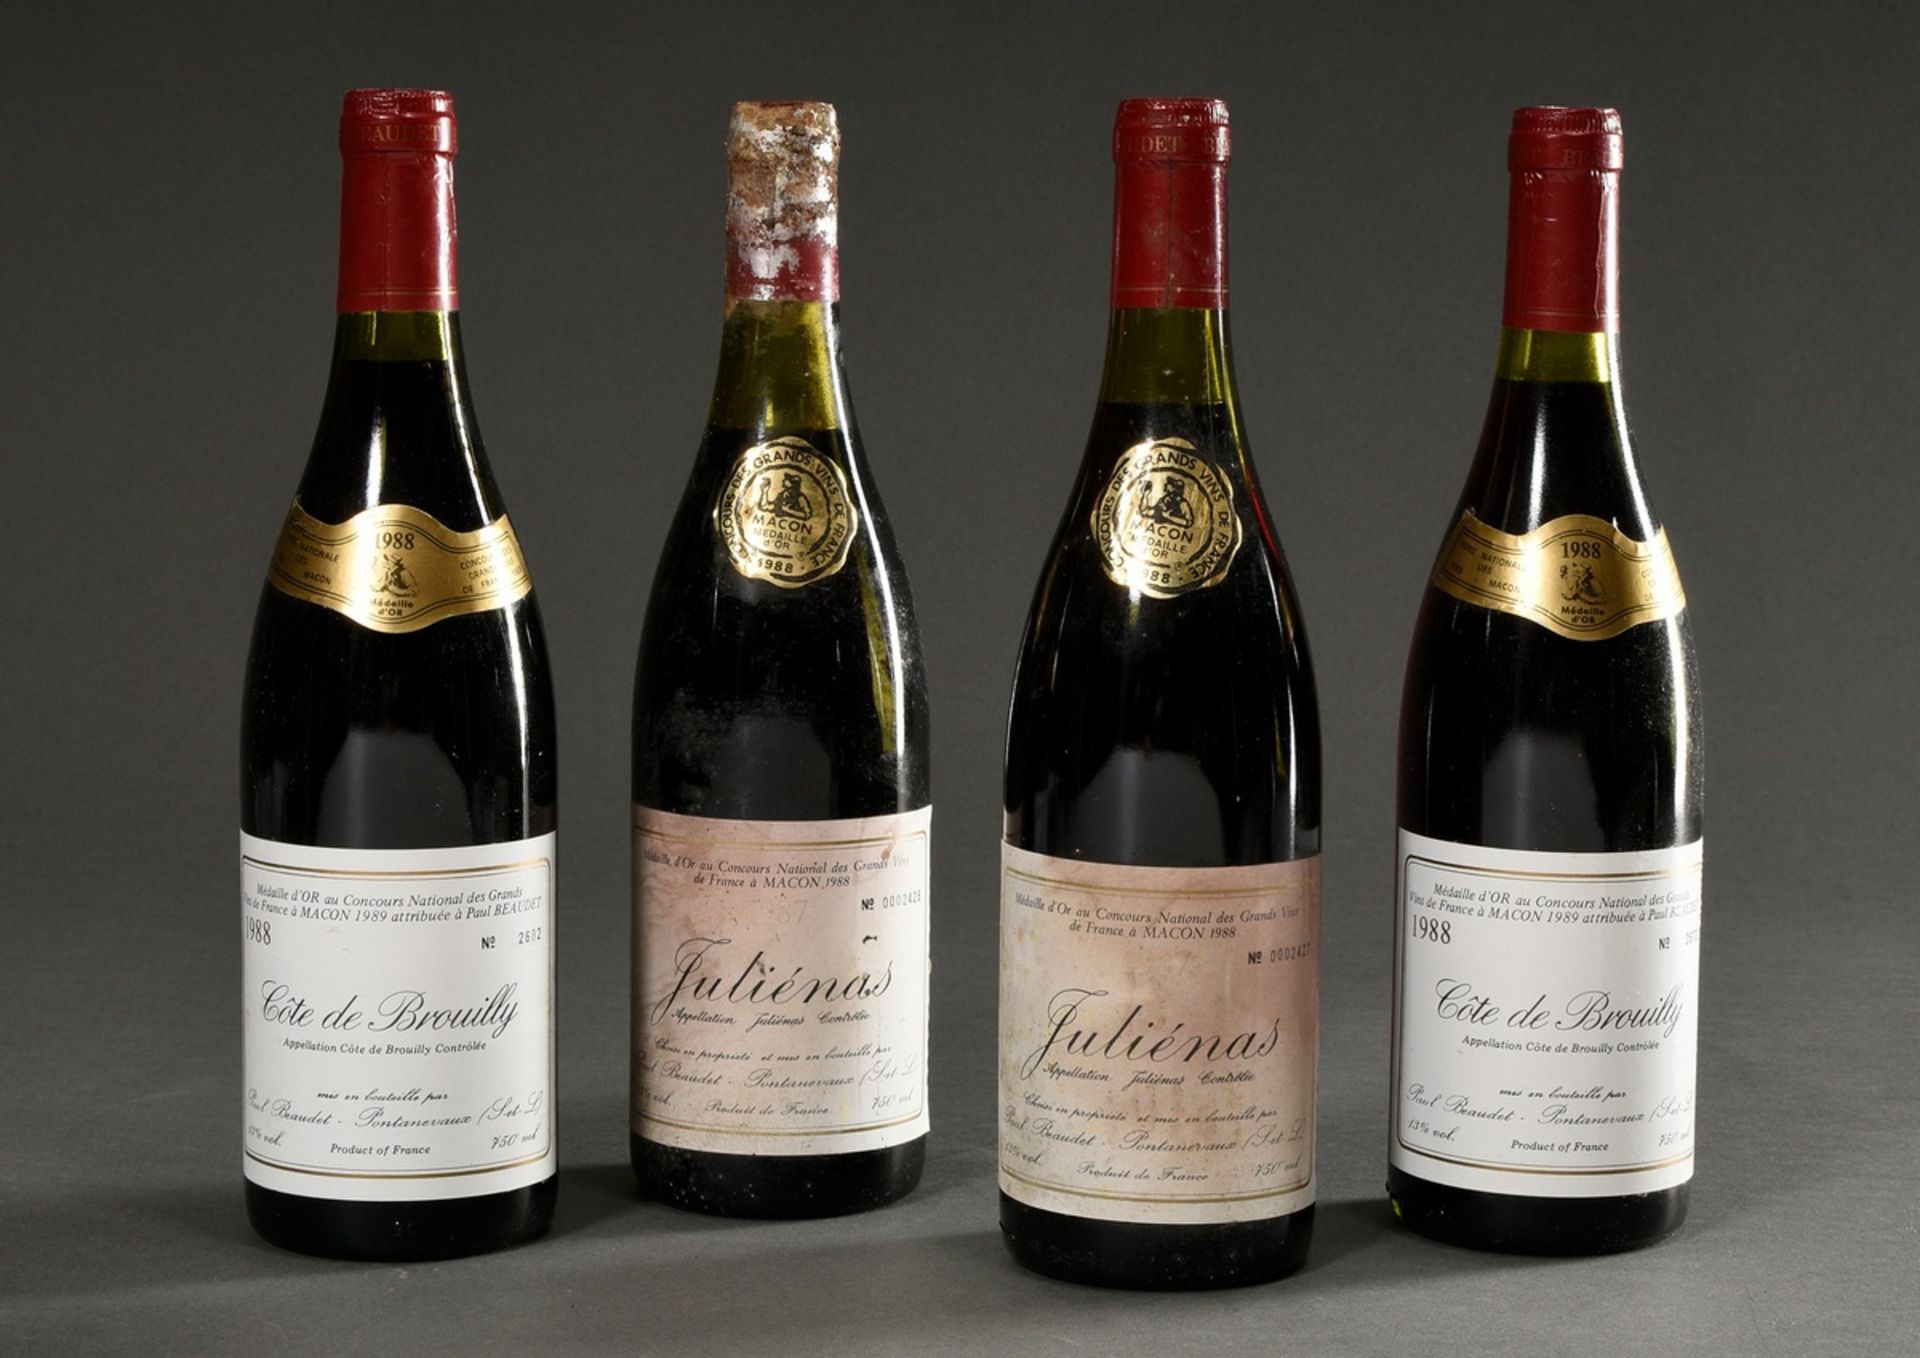 4 Bottles: 2x 1988 Cote de Brouilly and 2x 1988 Julienas, Paul Beaudet, Burgundy, France, 0.75l, la